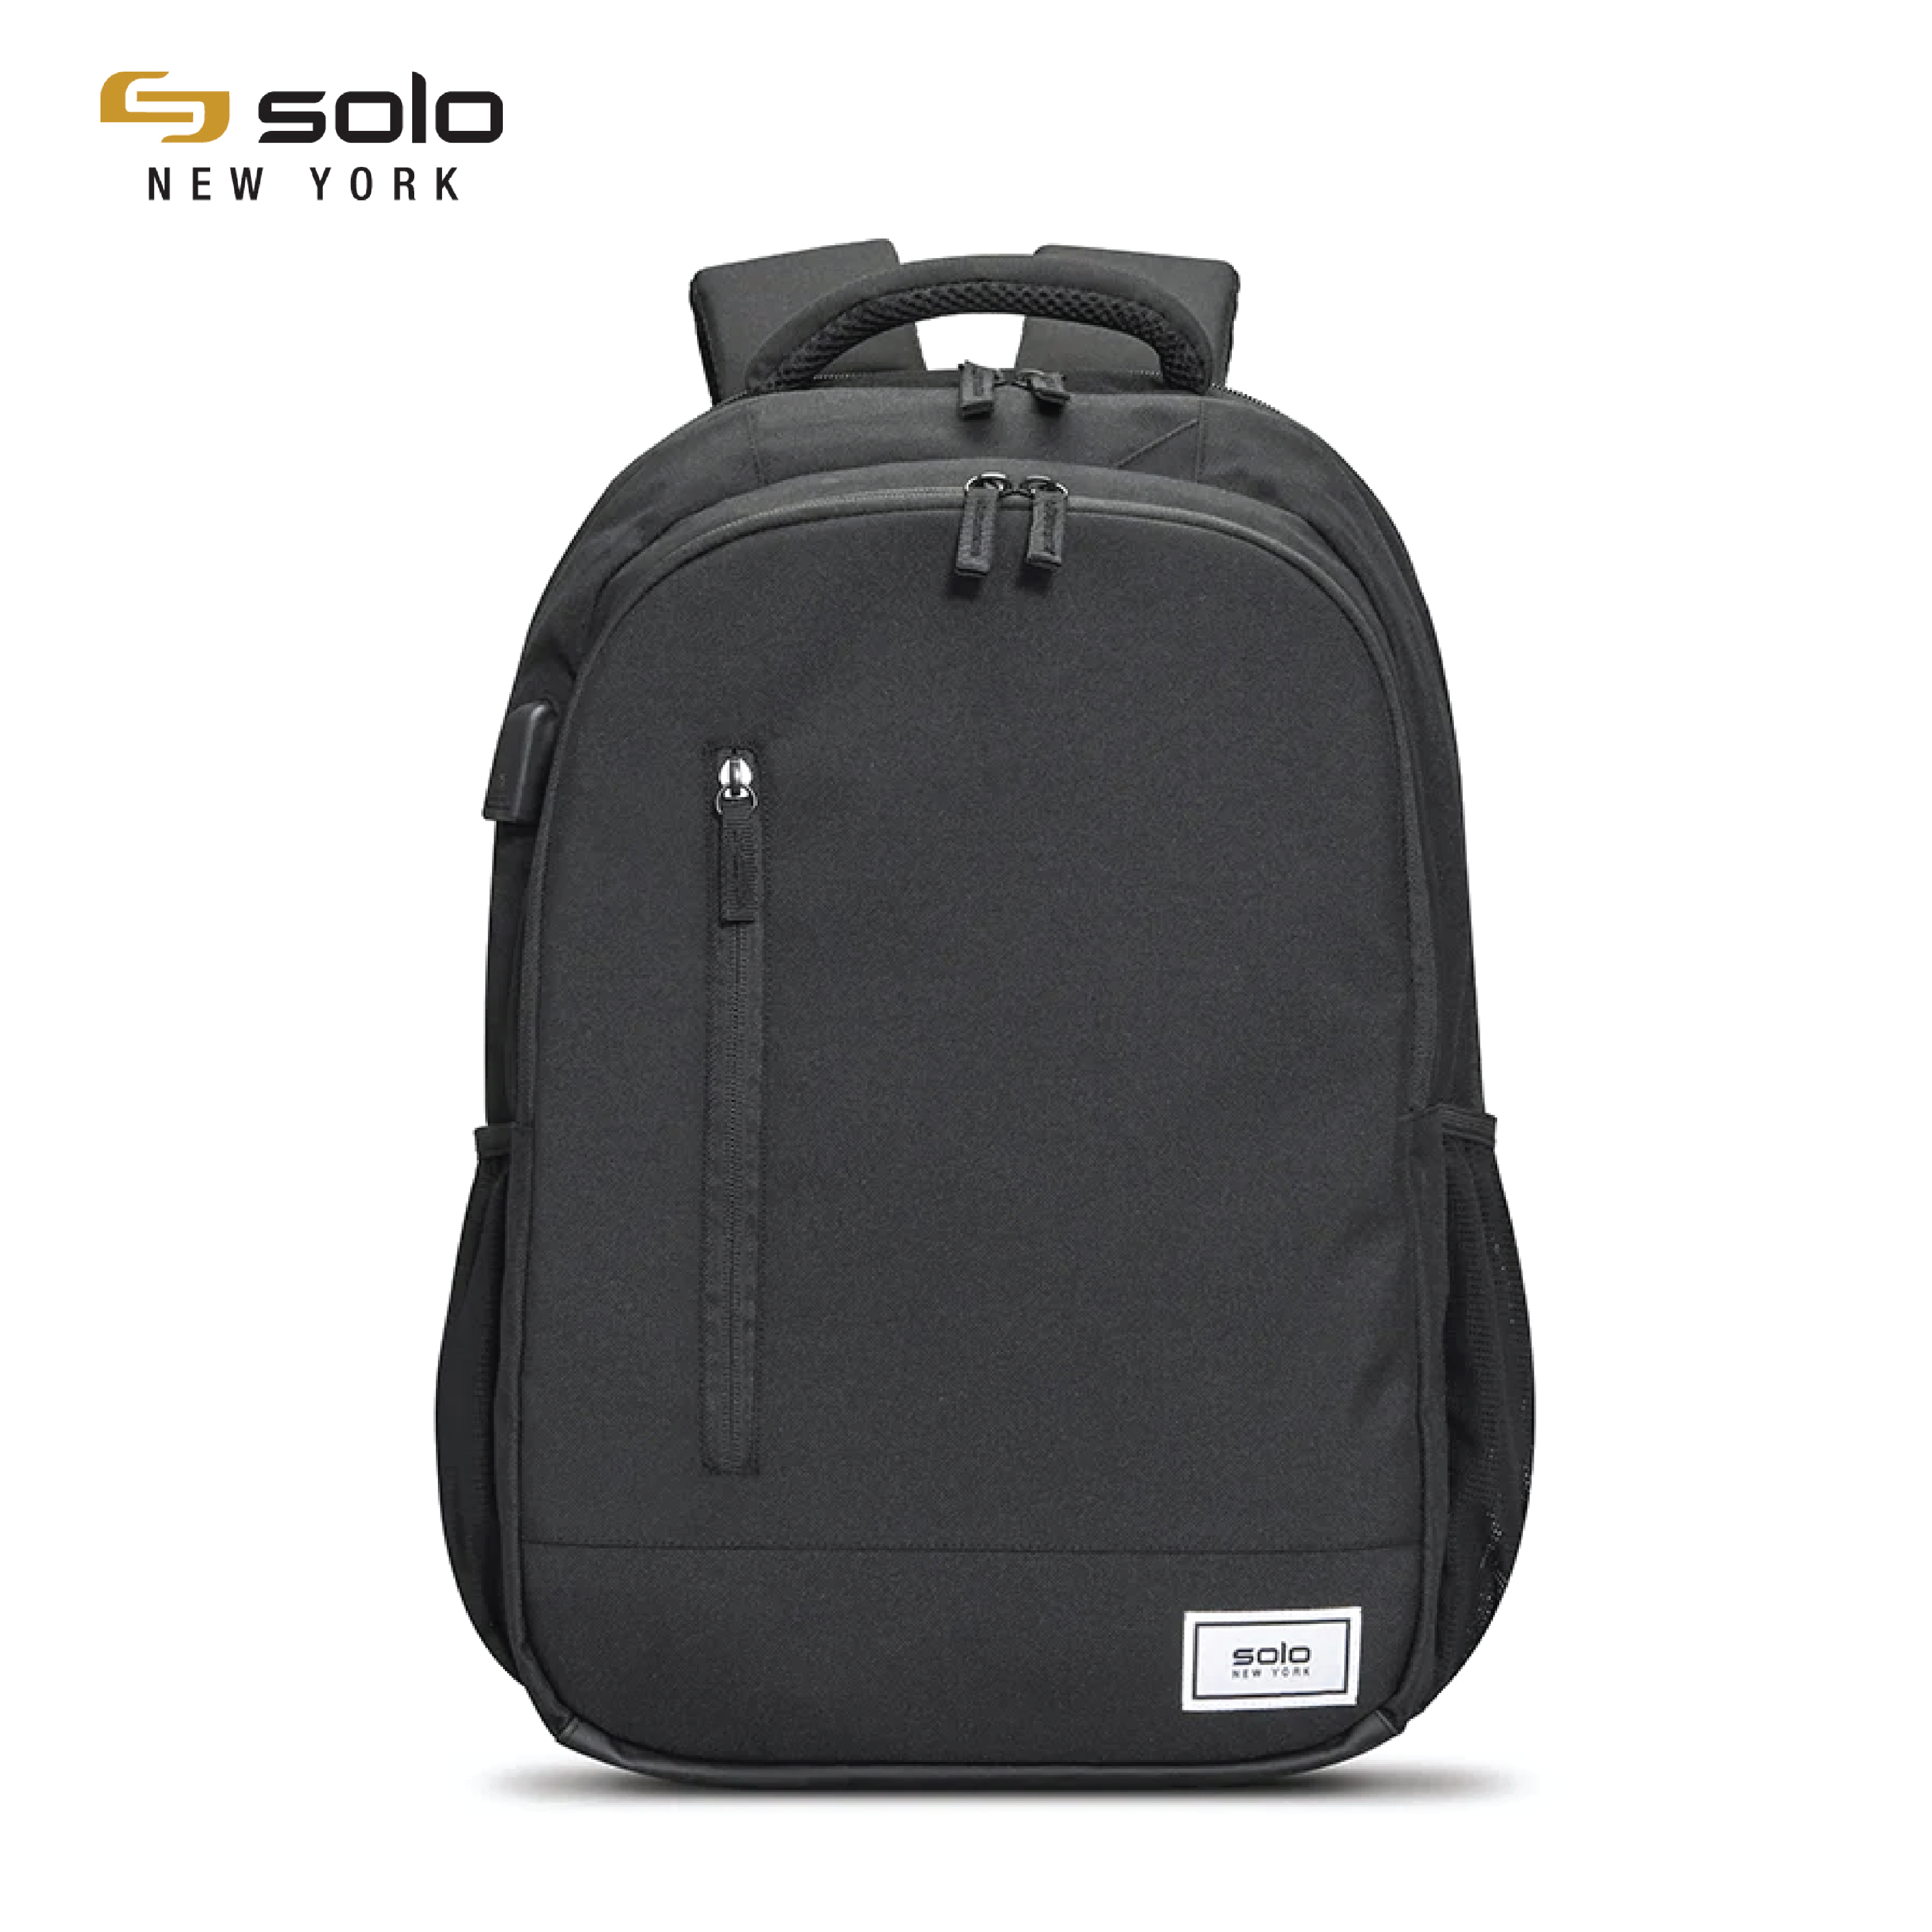 Balo Laptop Solo Re: Define 15.6 inch - Màu Đen - Mã UBN708-4 - Có cổng sạc USB - Chất liệu Vải tái chế - Bảo hành 5 năm chính hãng